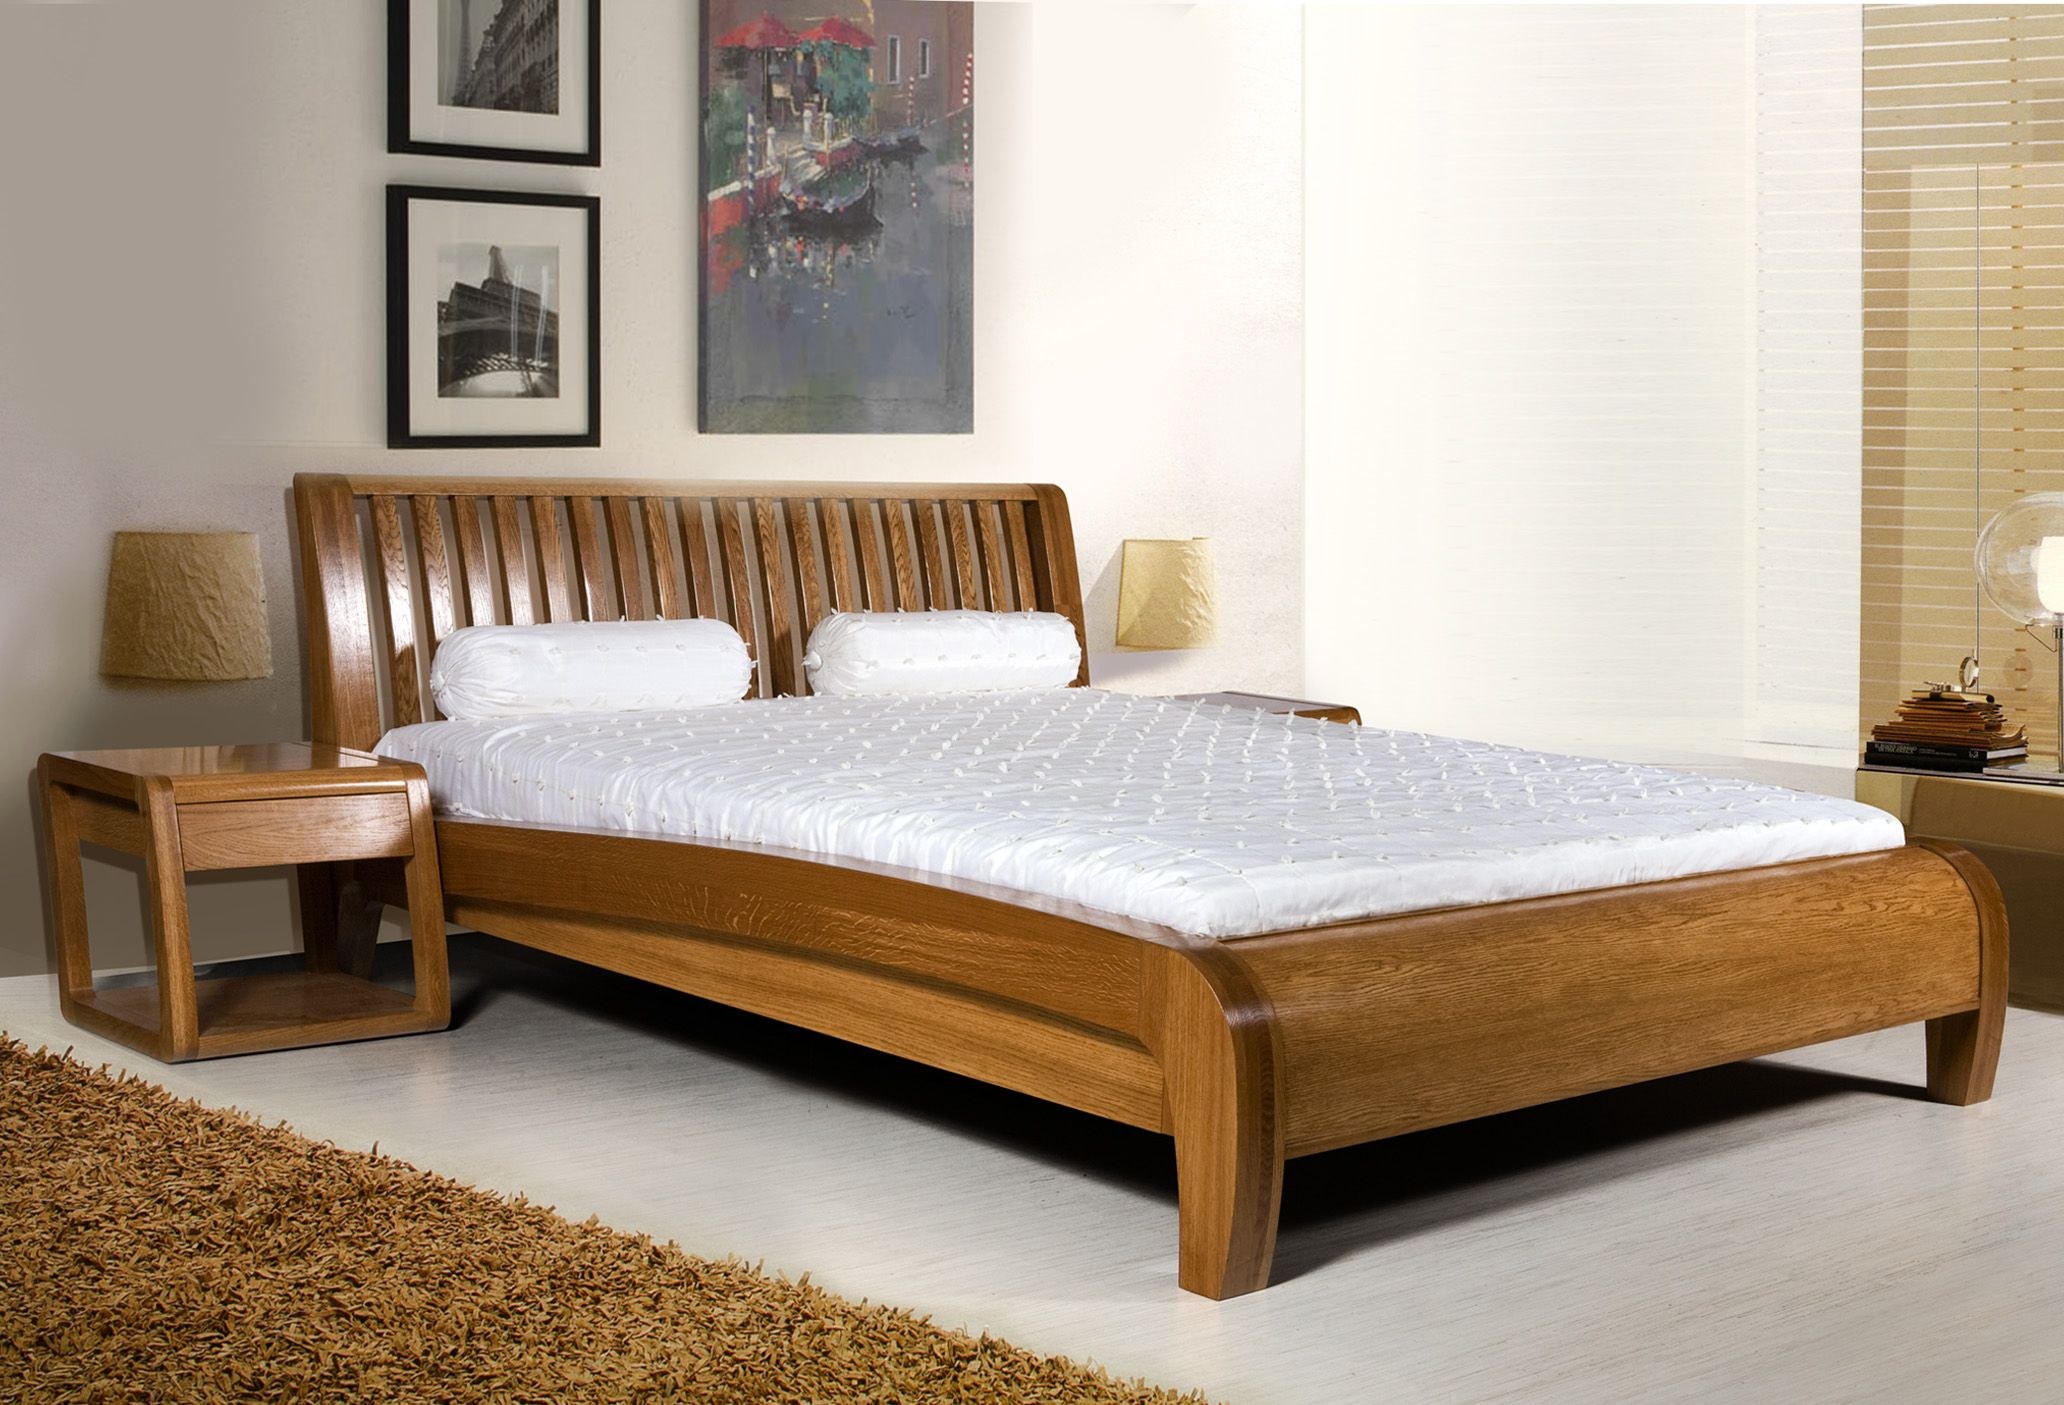 Купить деревянную кровать недорого. Кровать Валенсия Явид. Спальня Милано Явид. Кровать Валенсия массив дуба. Кровать Монтана массив дуба.